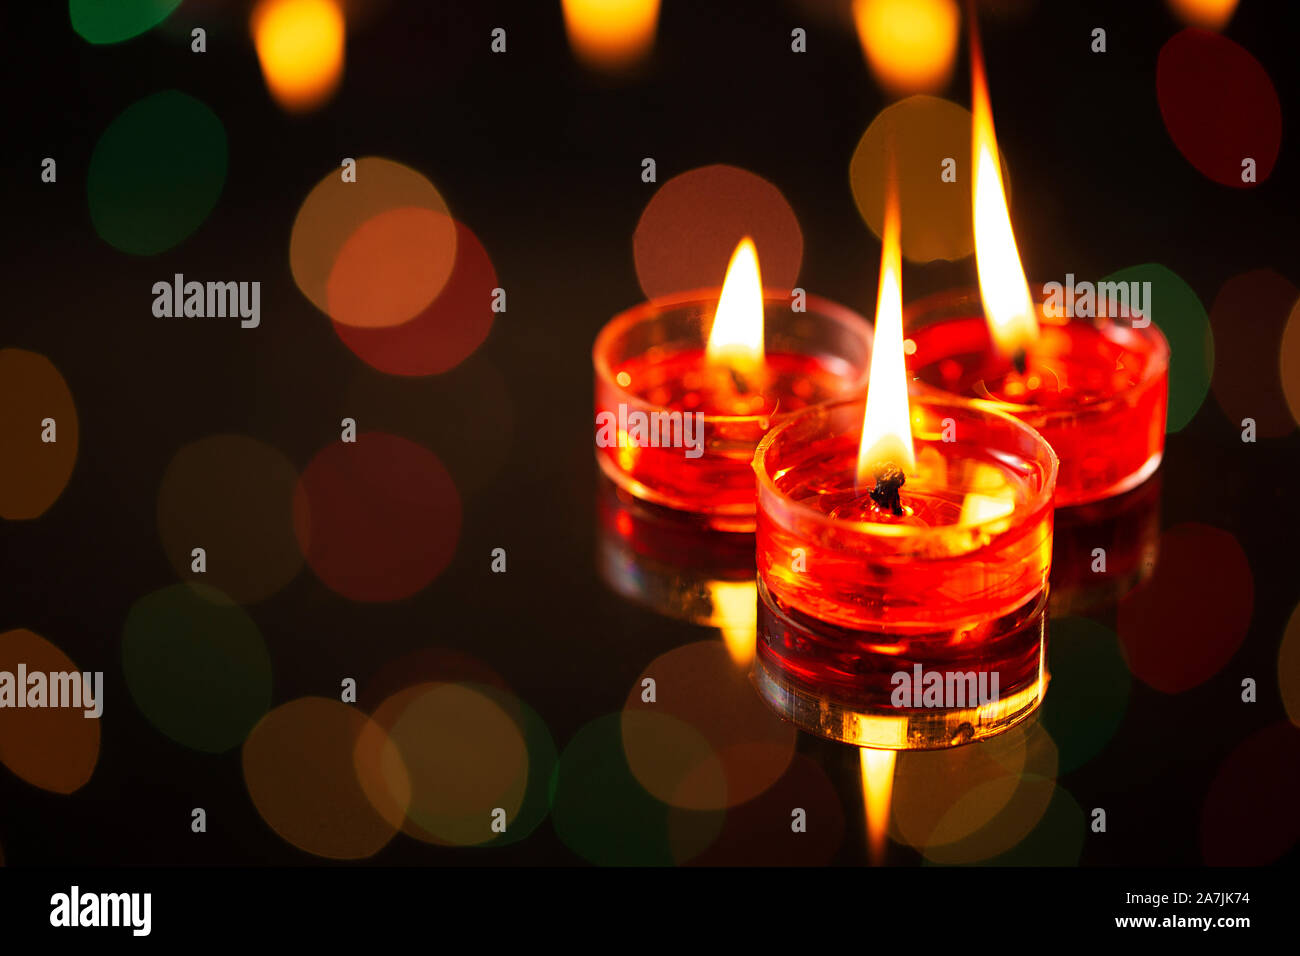 Burning candles Lighting Illuminated on Diwali Festival Celebration Nobody Stock Photo